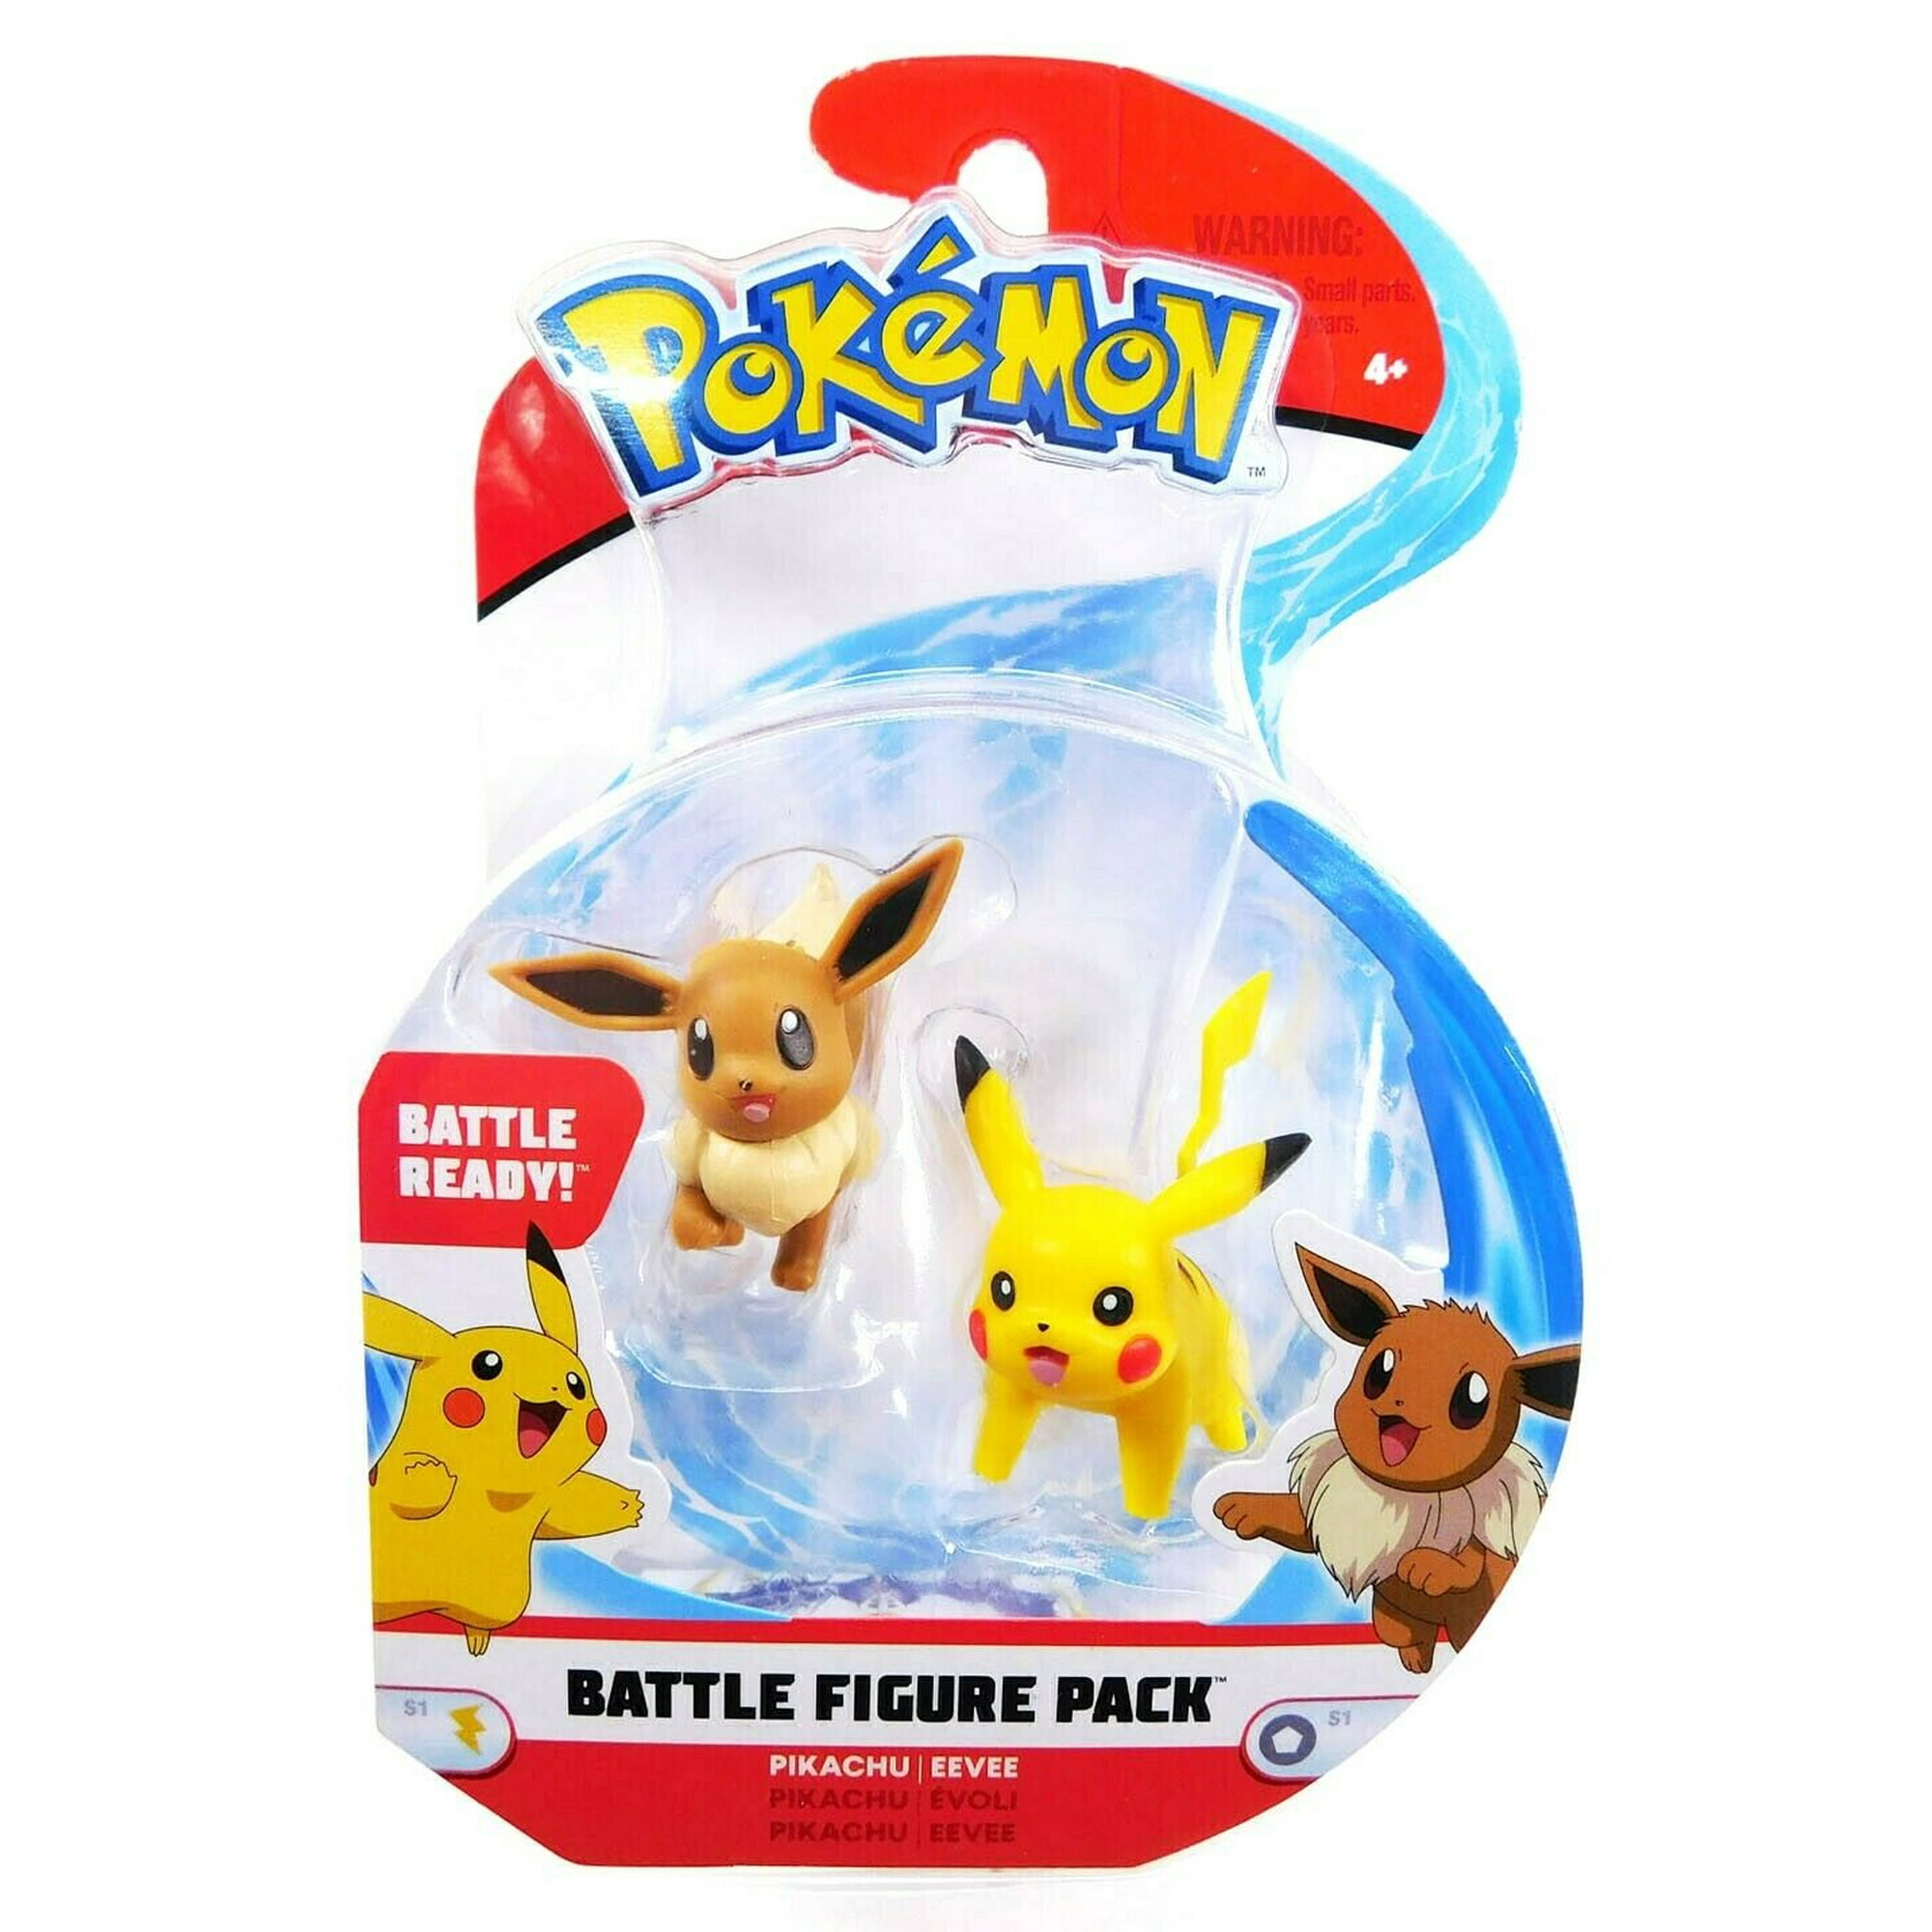 Wicked Cool Toys Pokemon Battle Ready! Pikachu vs Eevee Battle